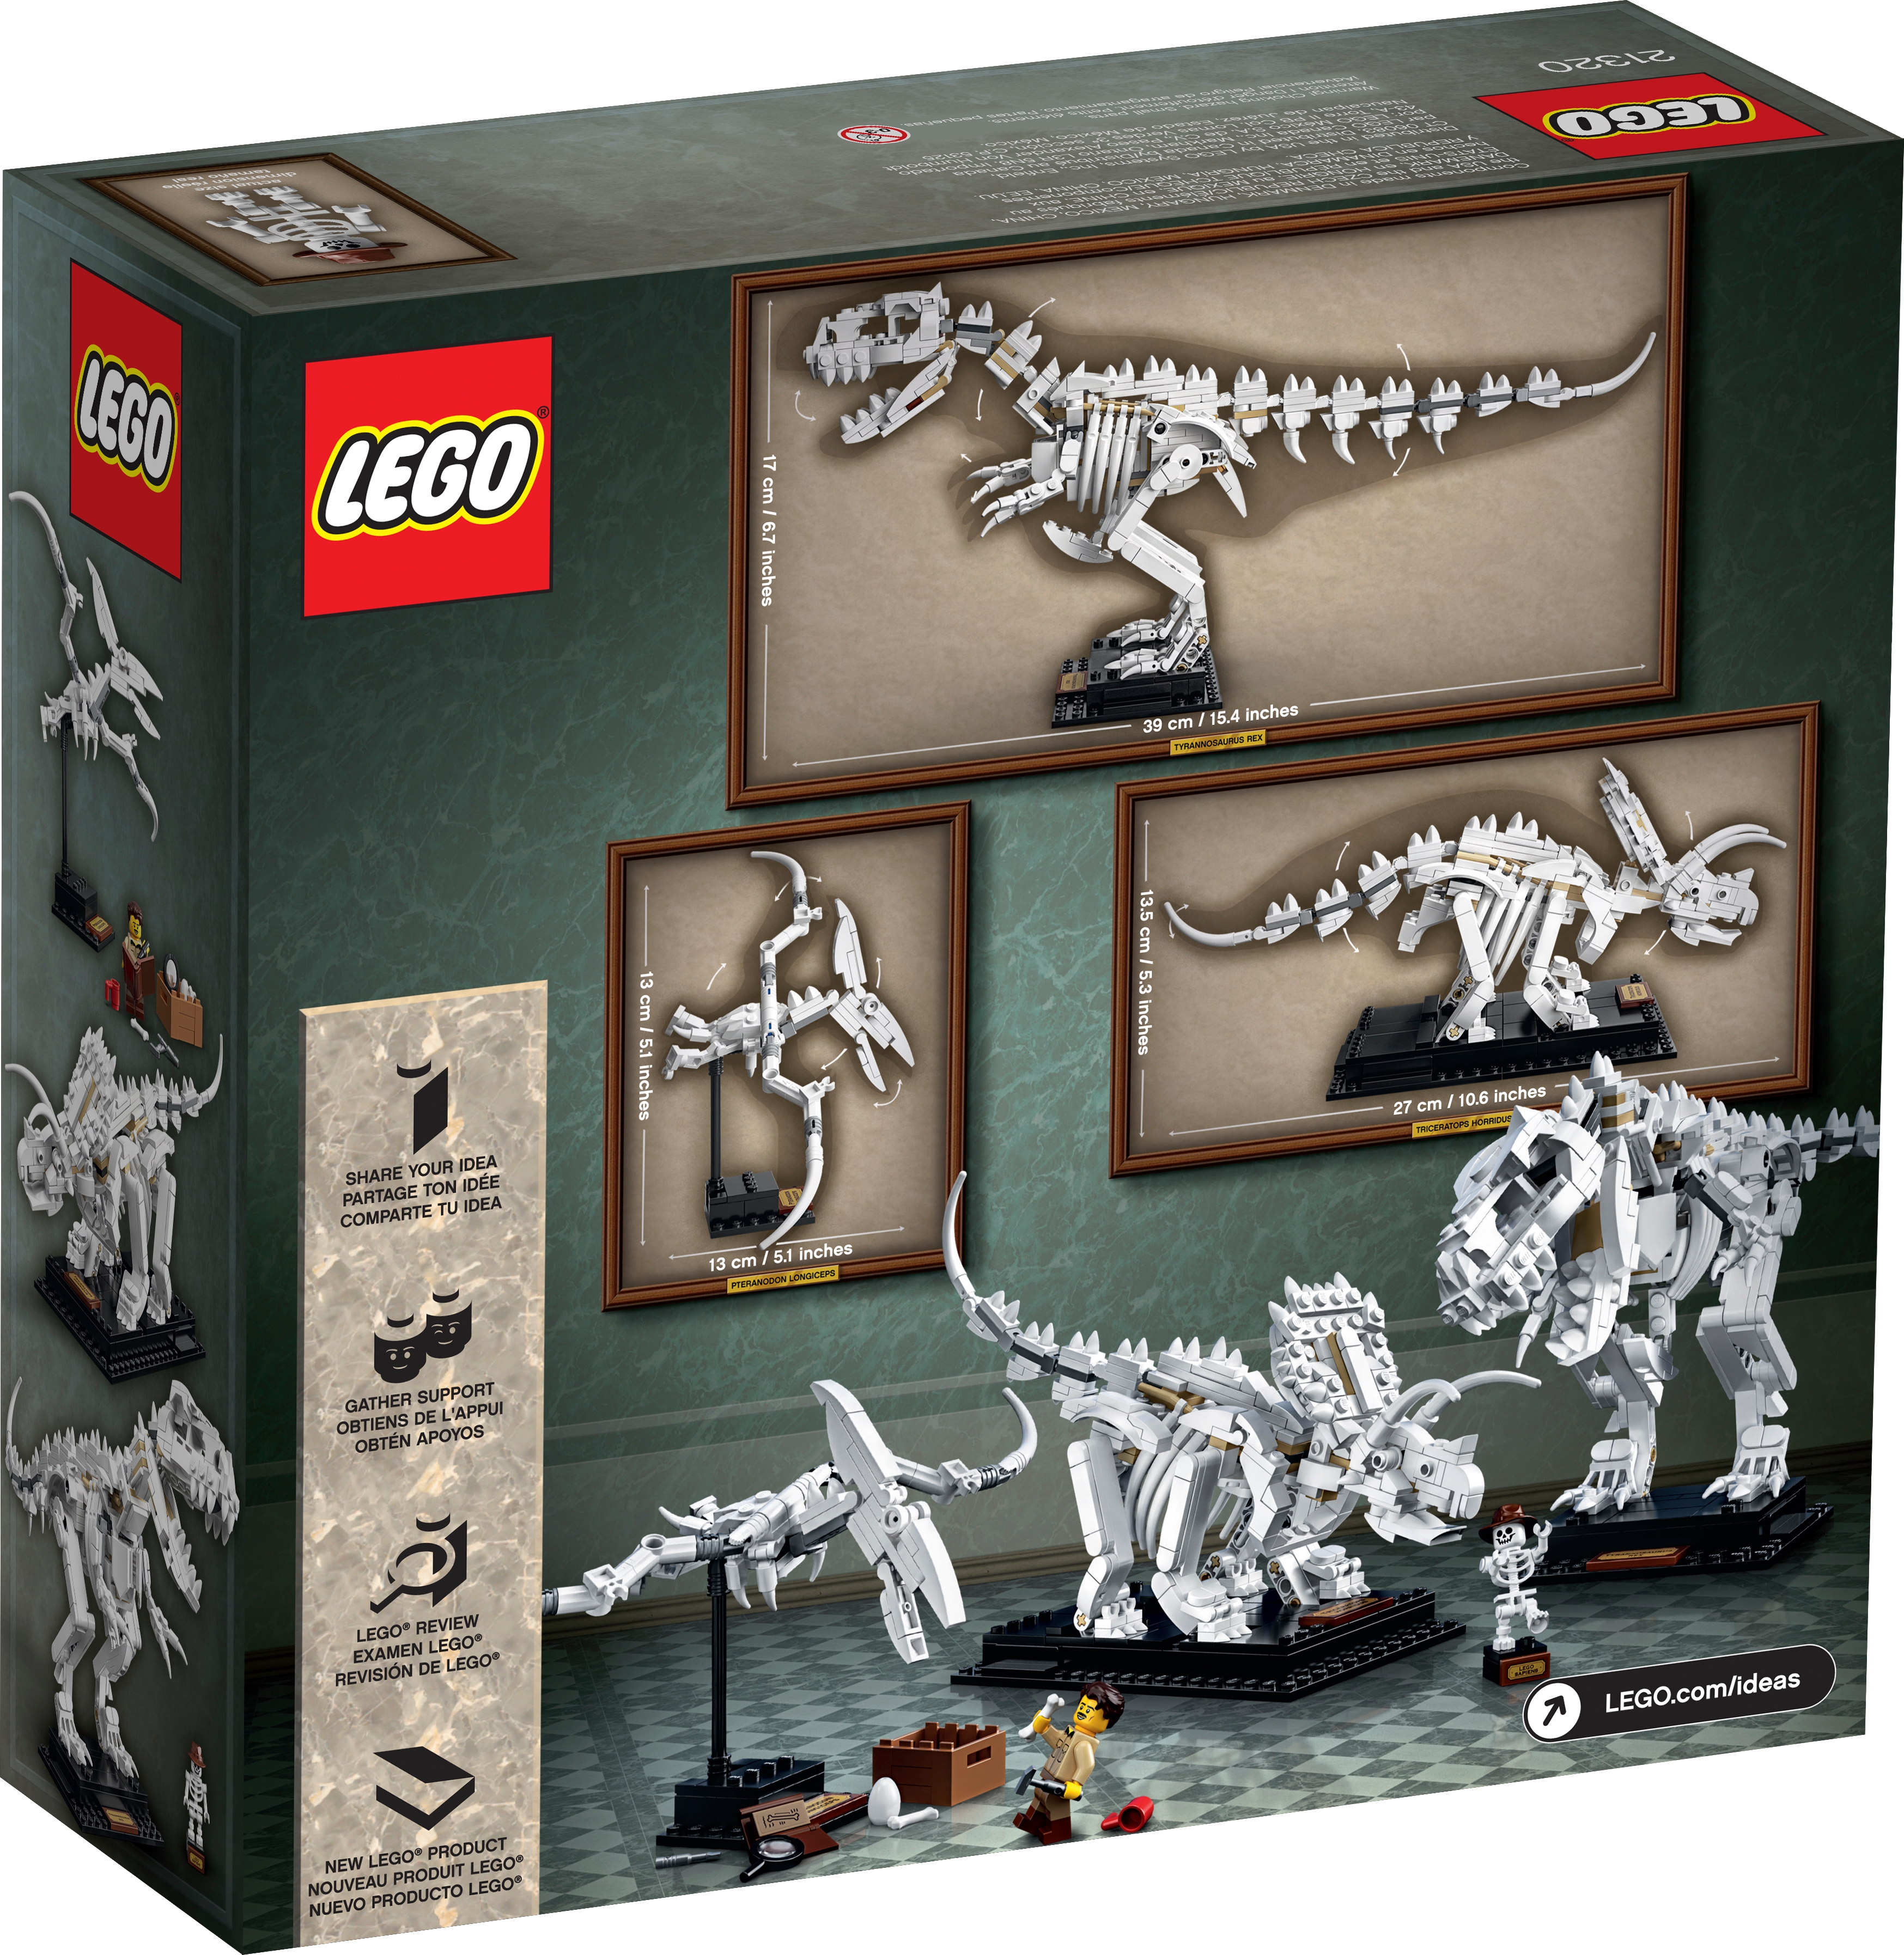 LEGO Jurassic World - Exposição de Fóssil do Dinossauro T.rex